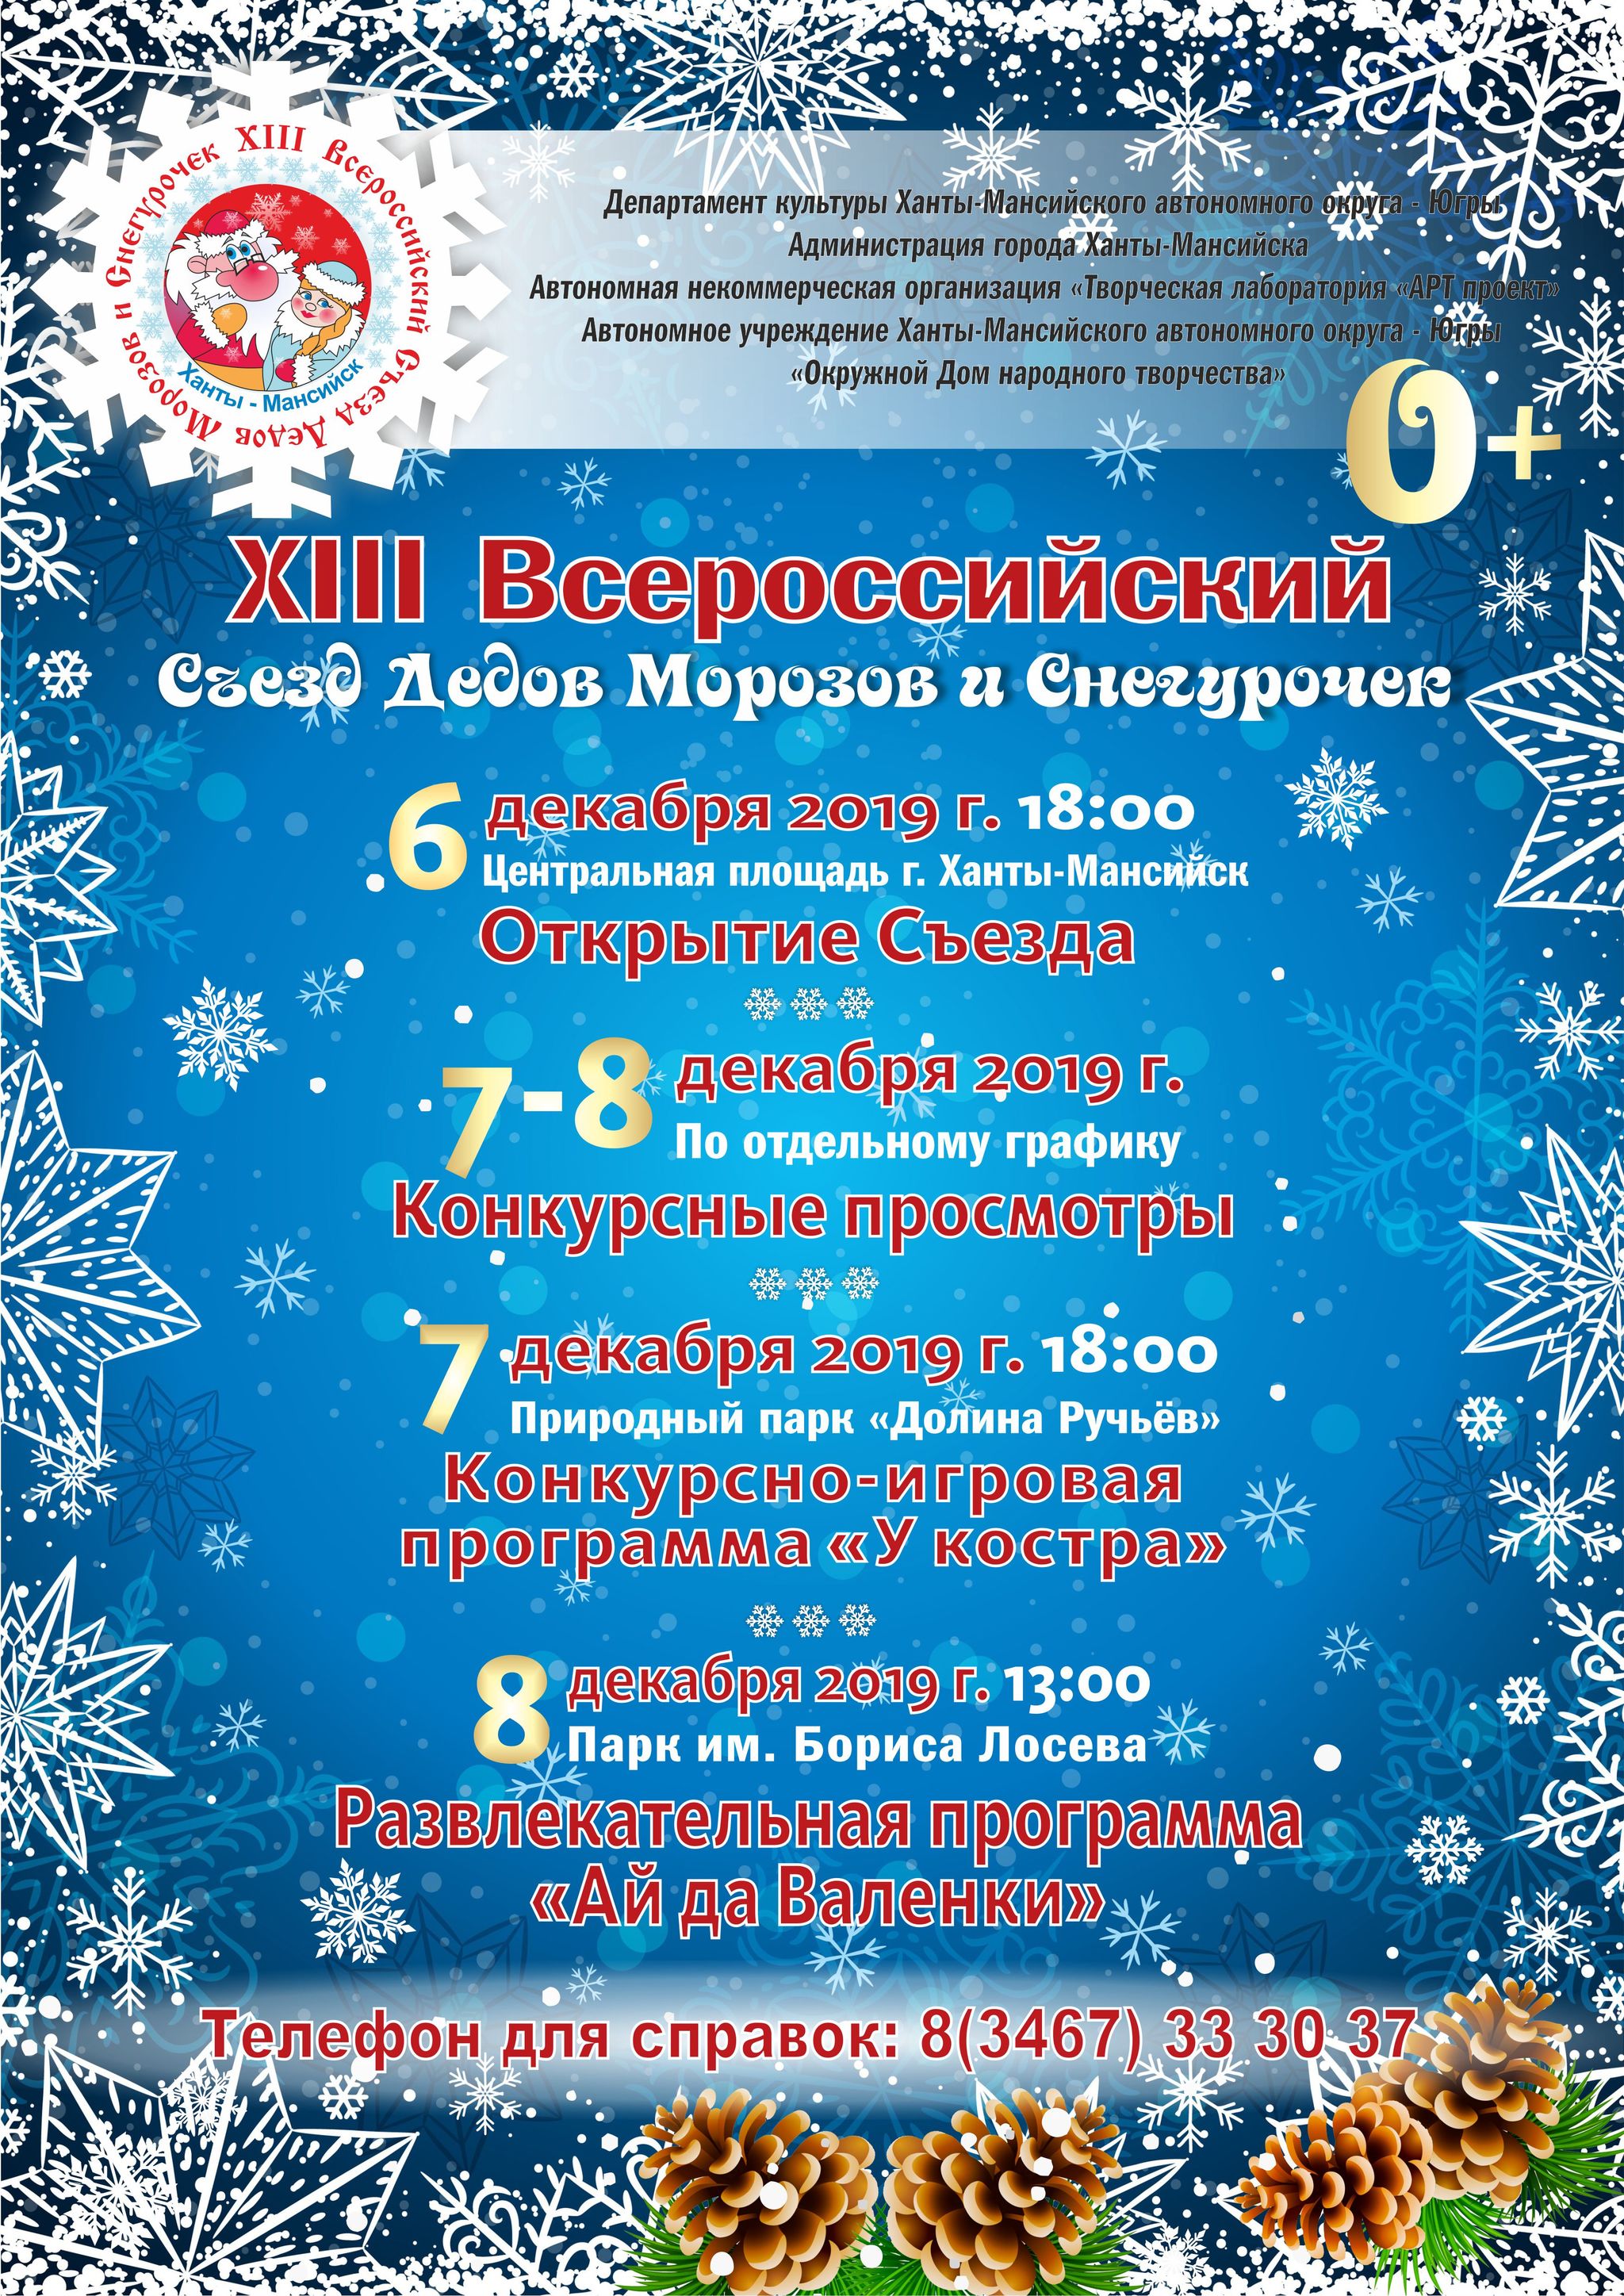 В Ханты-Мансийске состоится XIII всероссийский съезд Дедов Морозов и Снегурочек